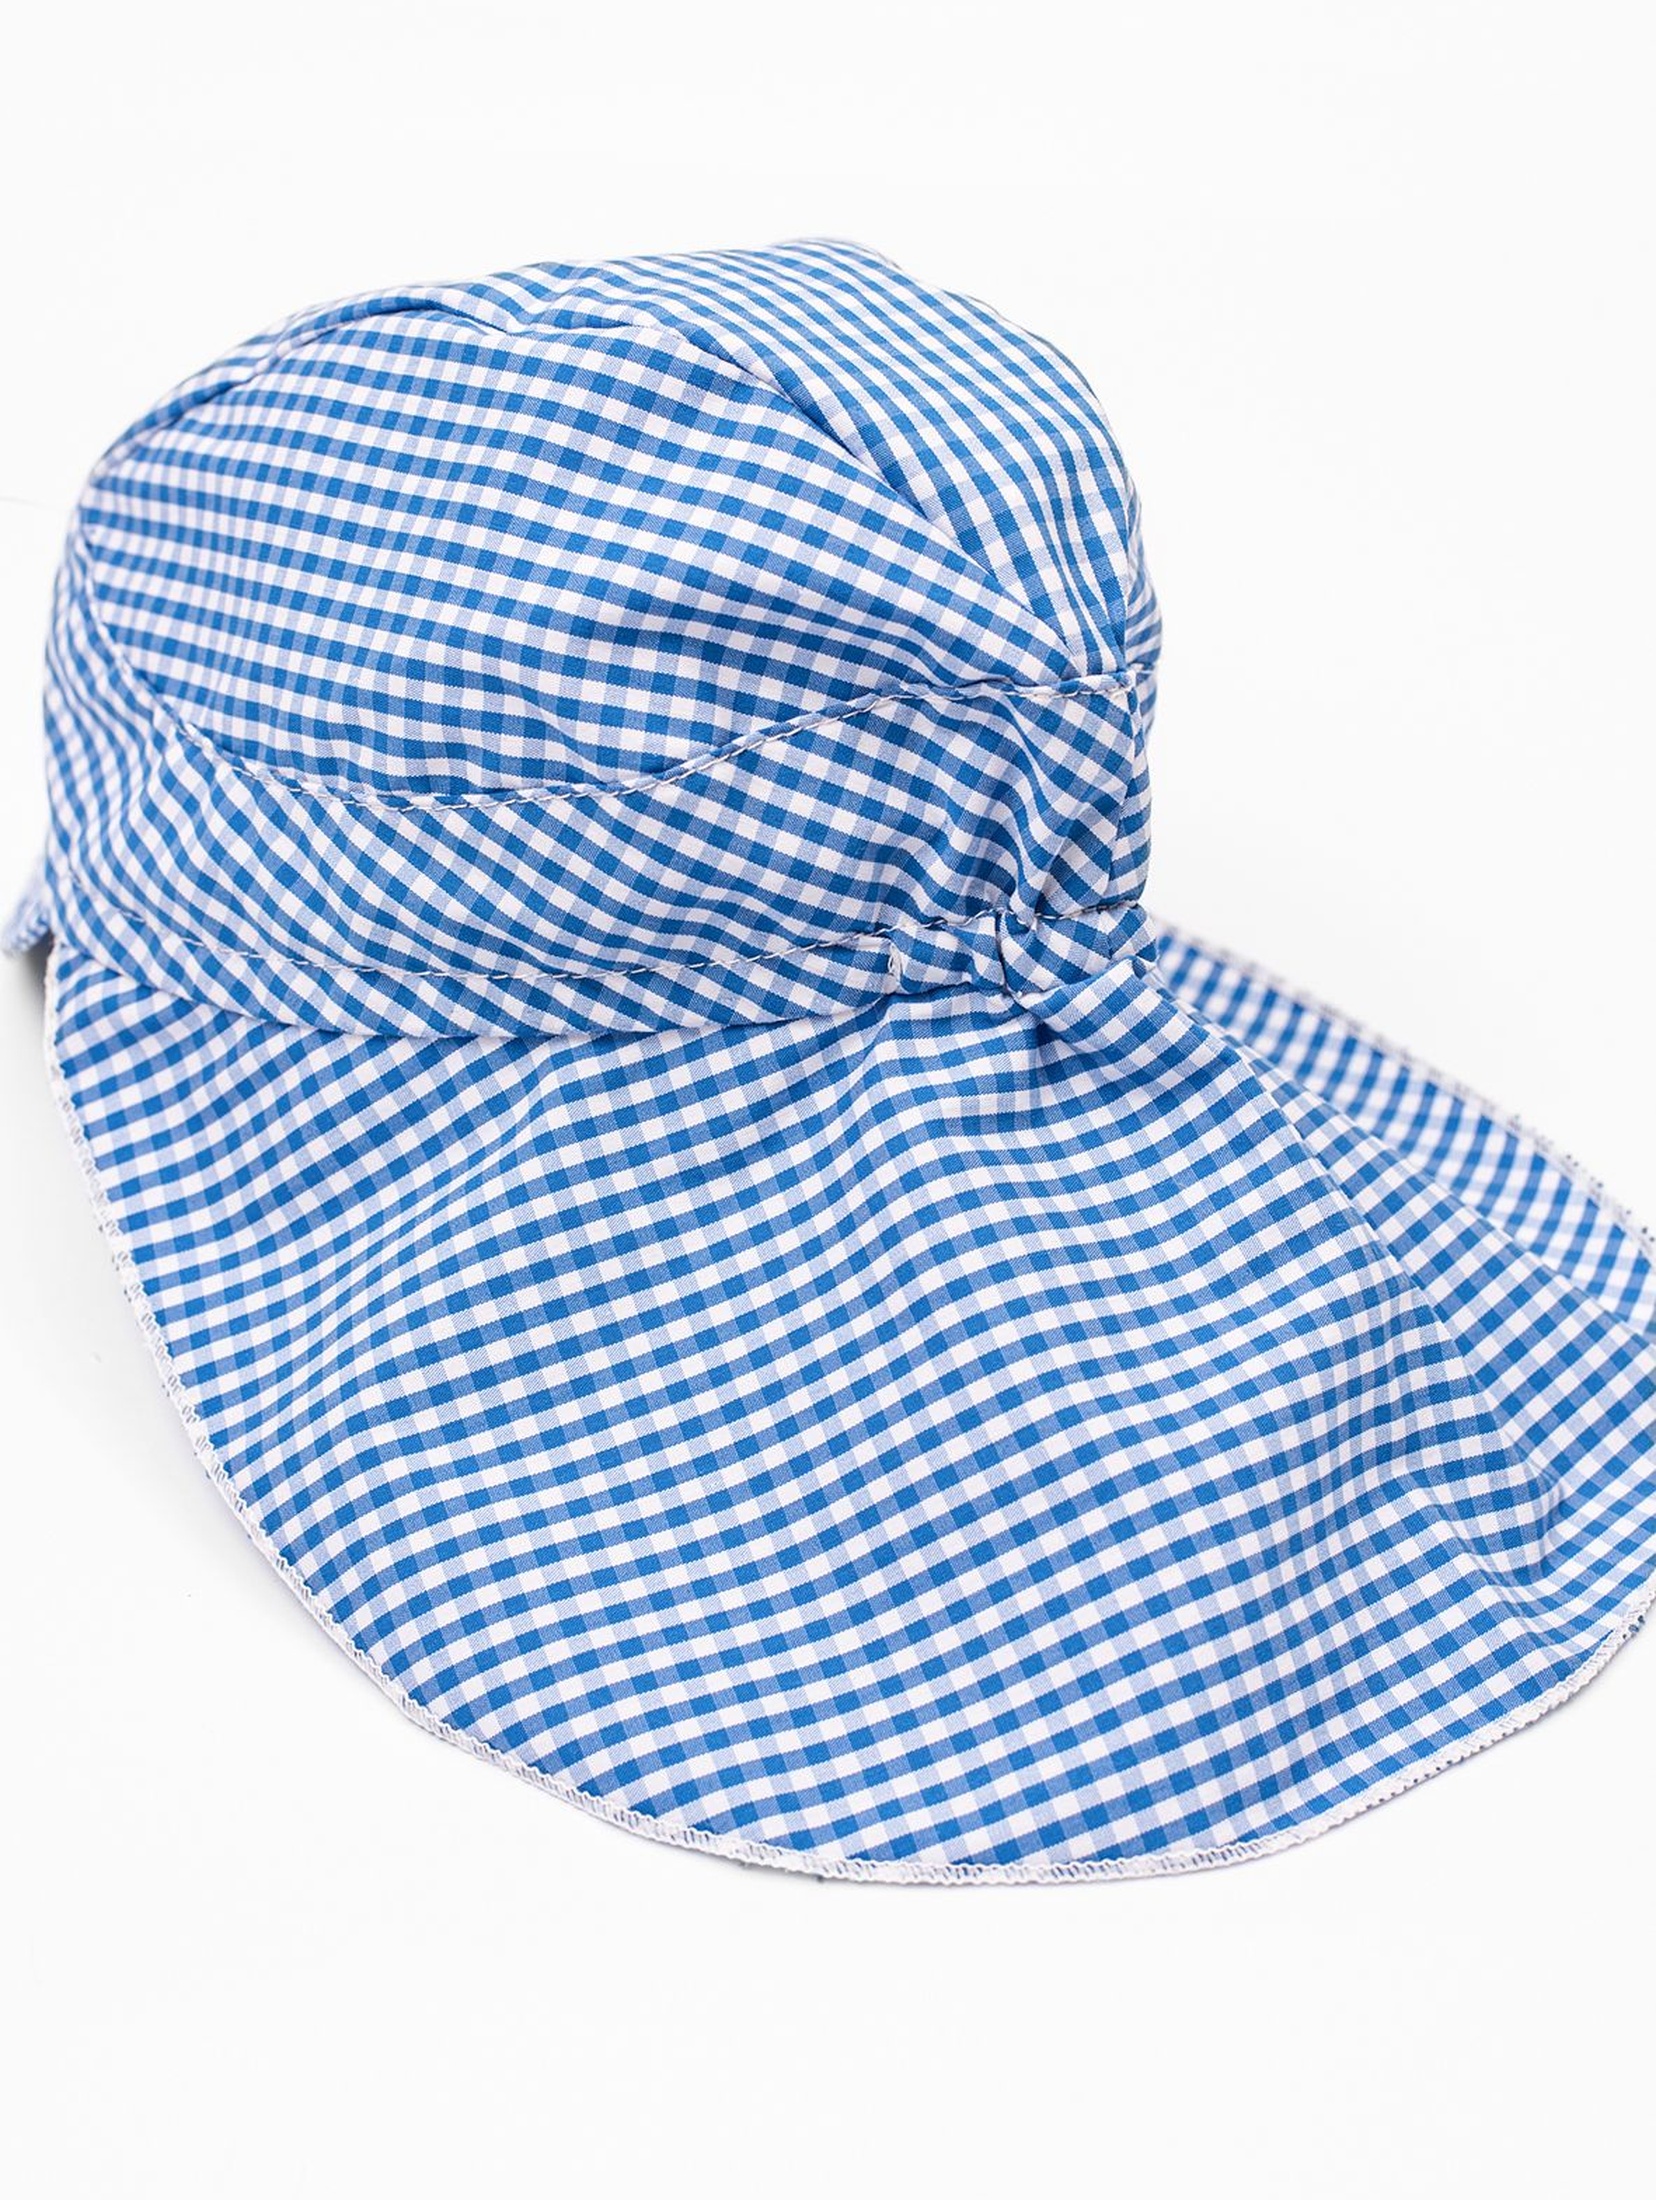 Niemowlęca czapka z daszkiem i okryciem na kark- niebieska kratka